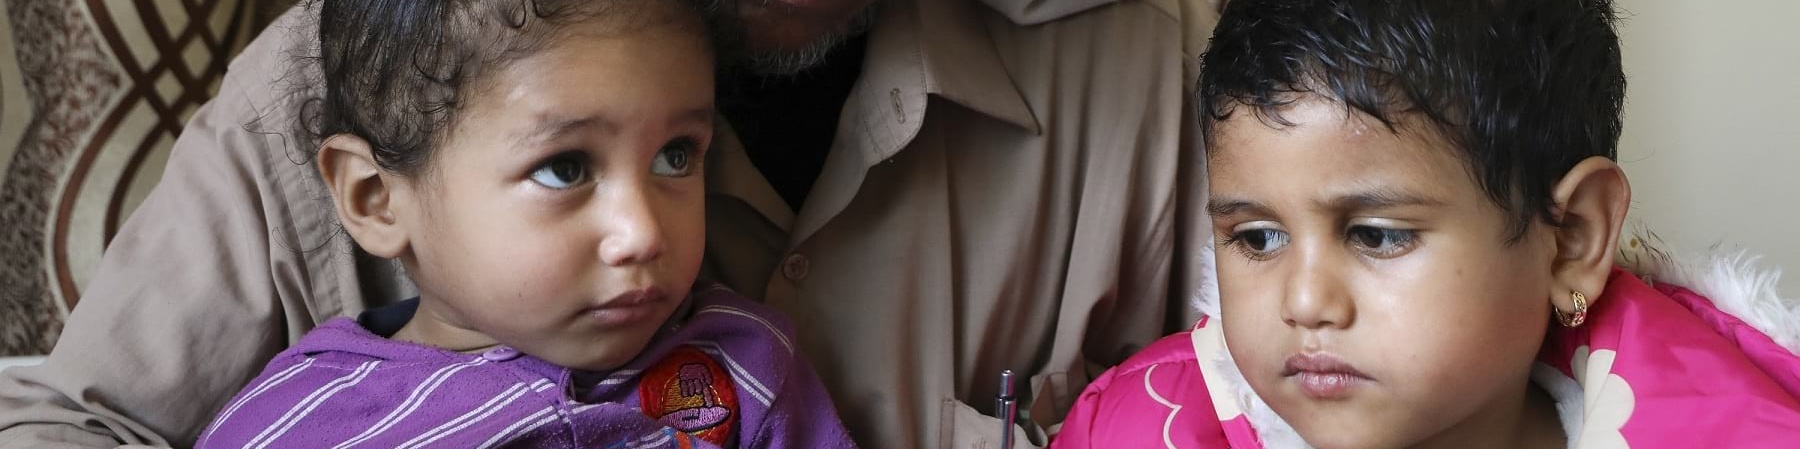 Un papà yemenita con turbante bianco in testa tiene in braccio le sue due bambine e le guarda. Entrambe hanno i capelli corti e neri, una guarda verso l alto e l altra verso la sua sorellina. Indossano magliette viola e rosa